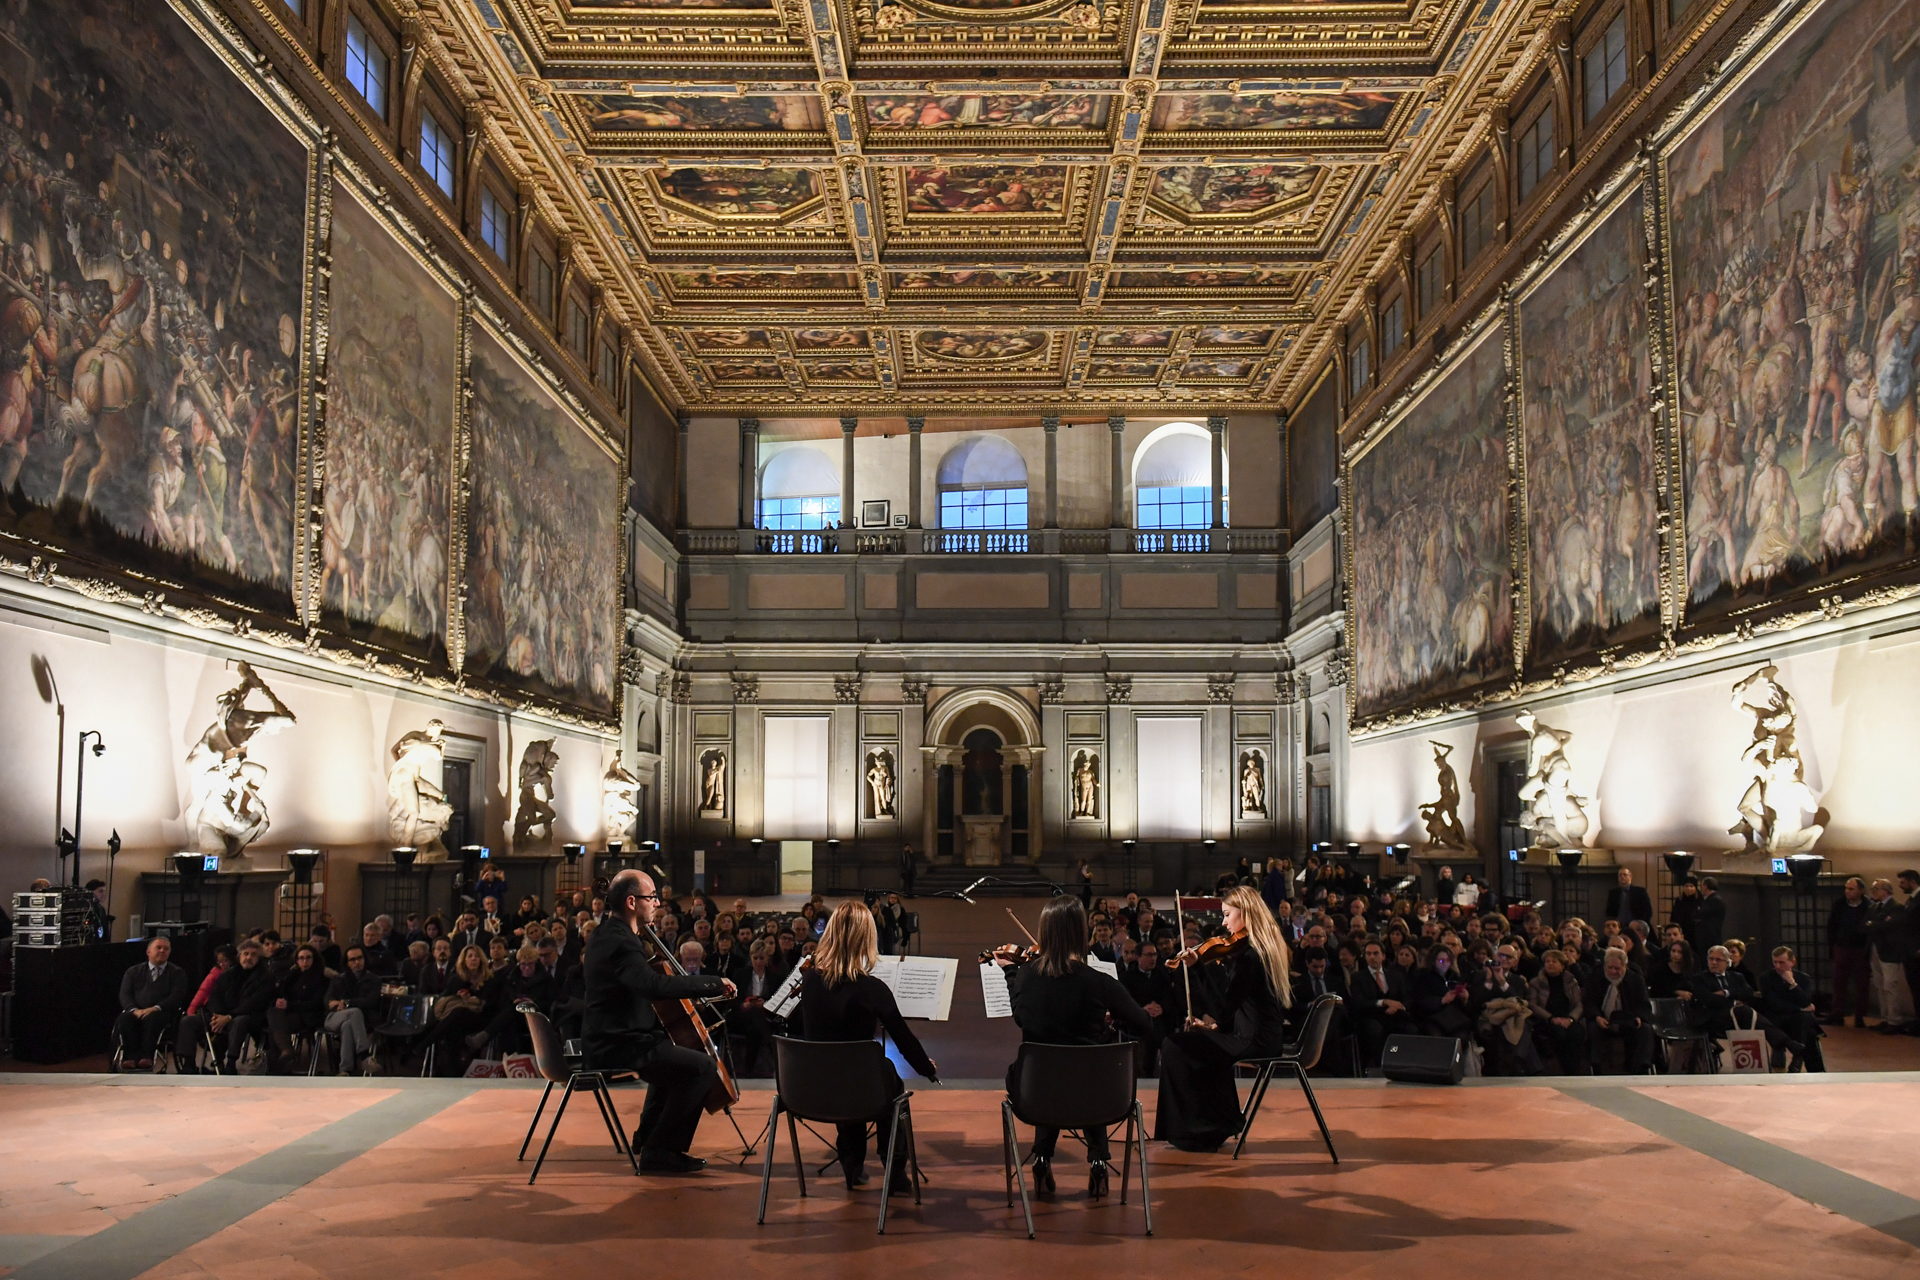 Firenze premia i suoi Ambasciatori - concerto iniziale di toscana Classica (fonte foto comunicato stampa)